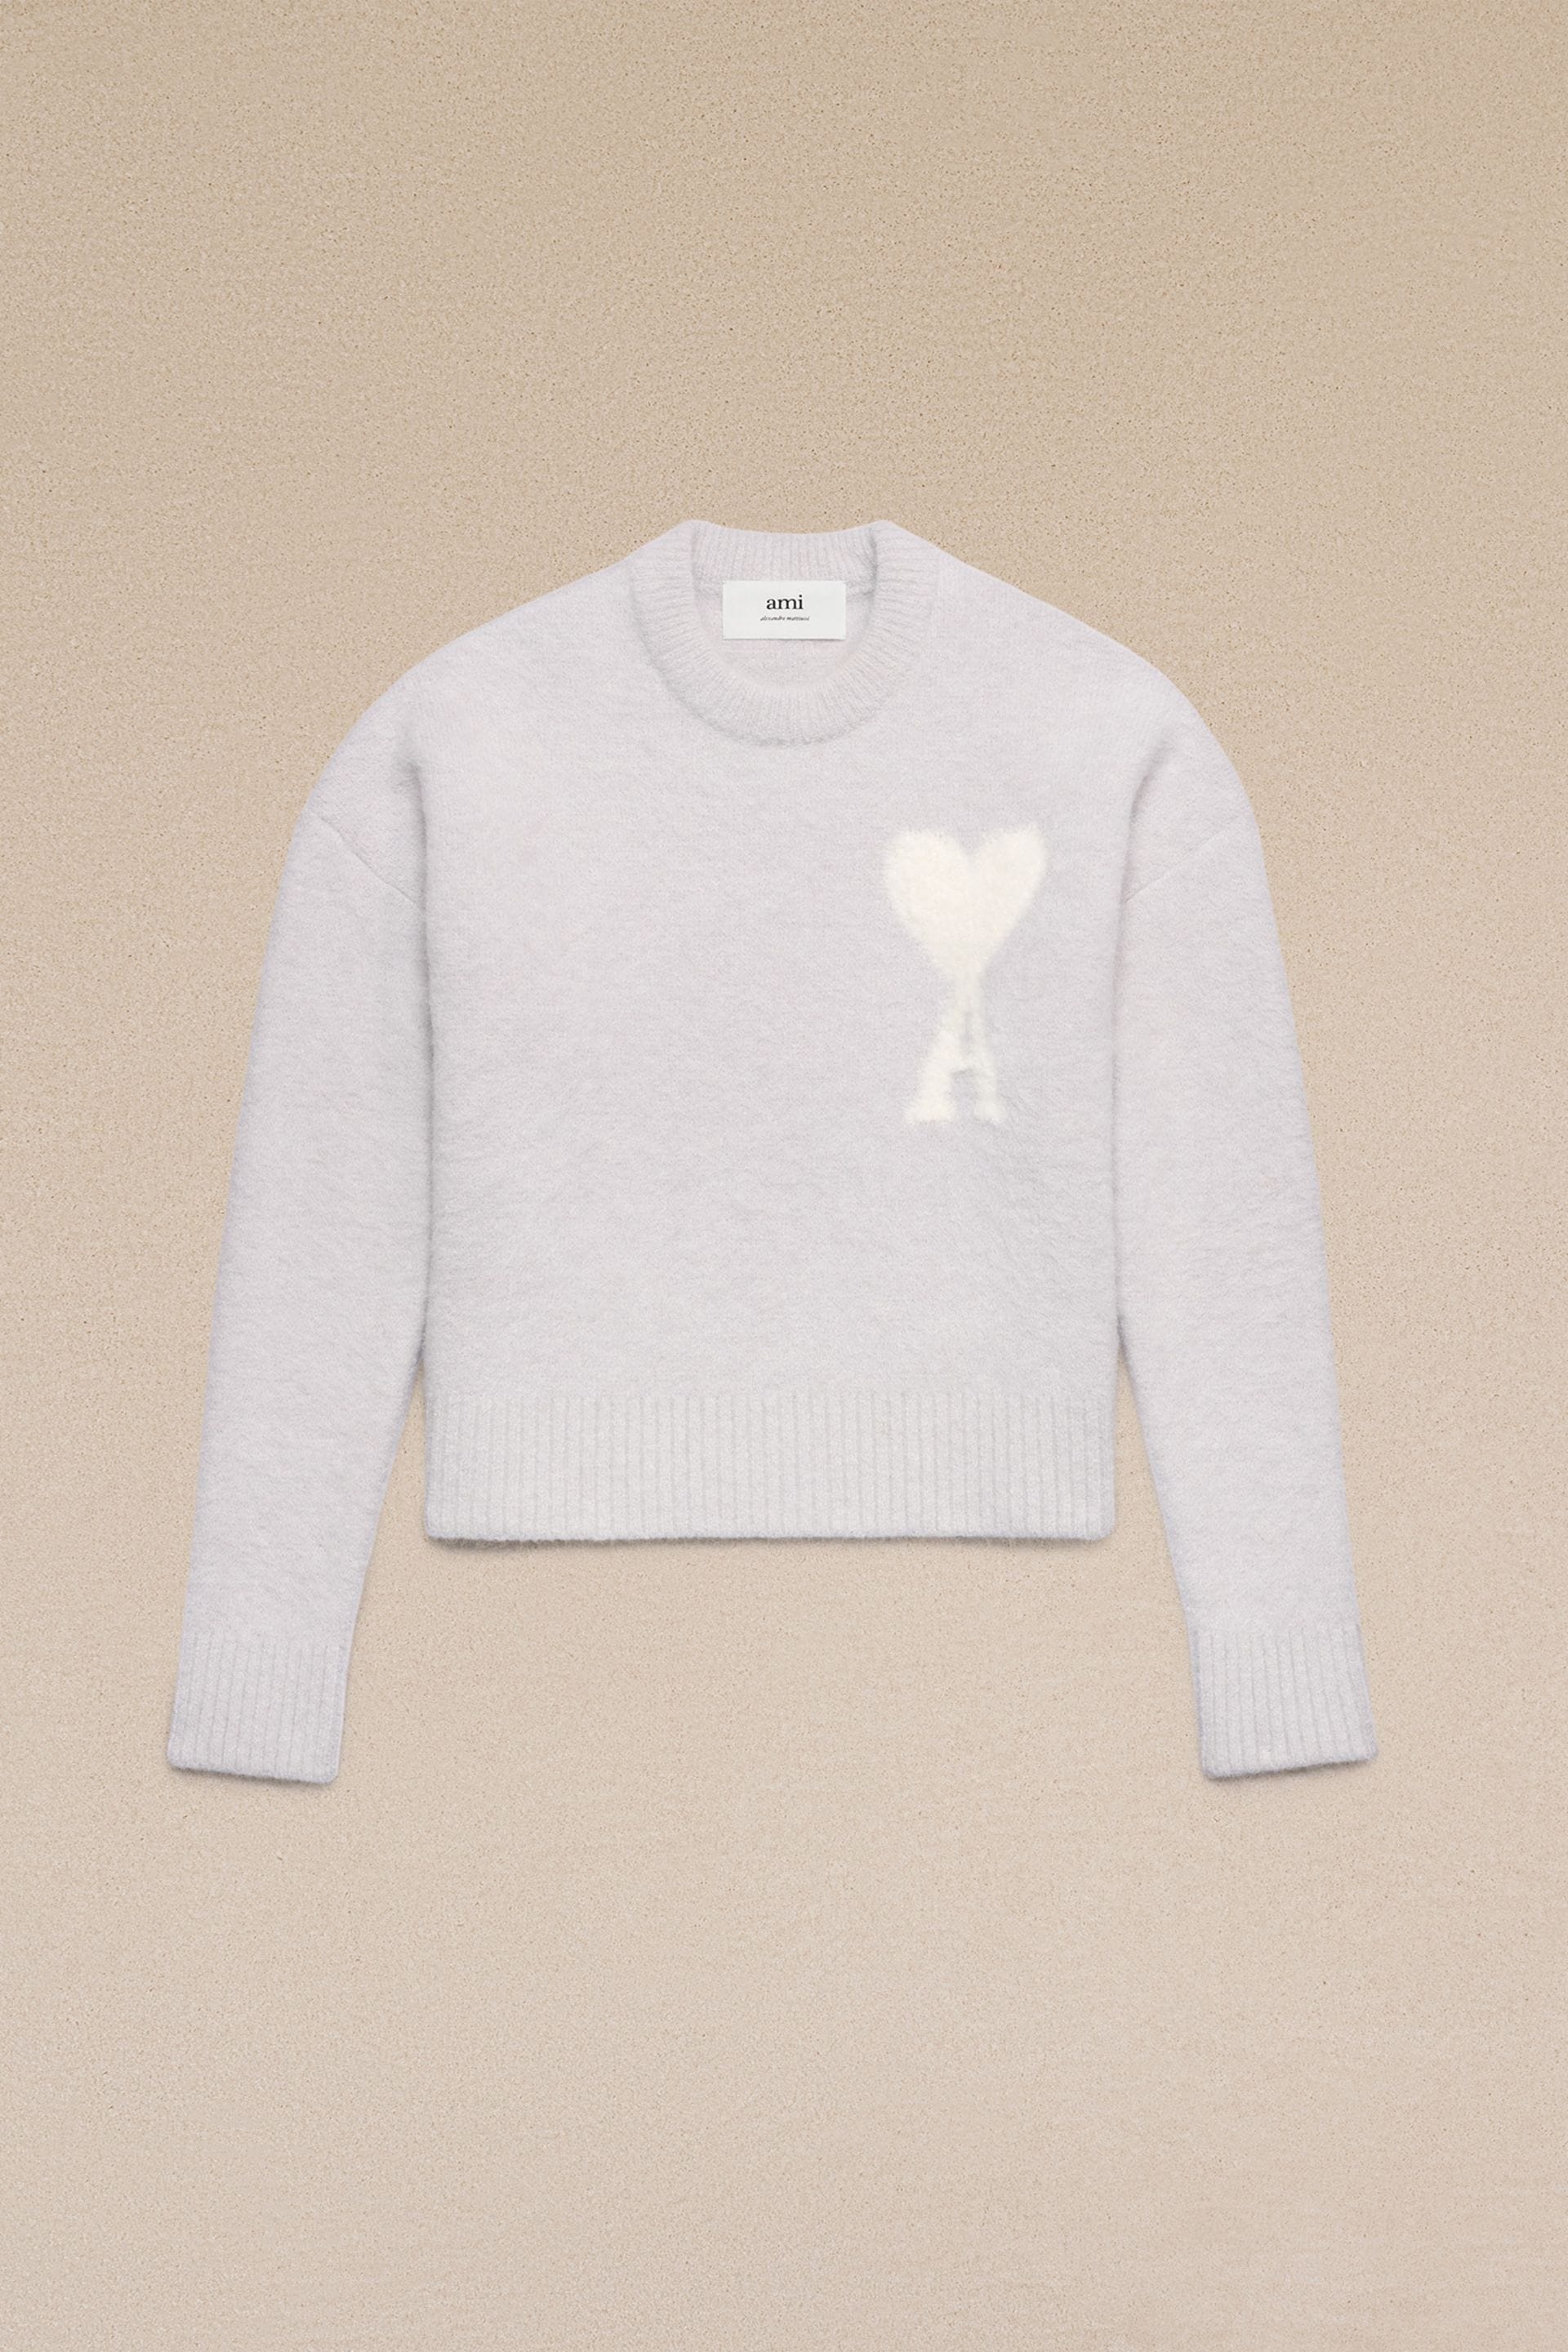 Off-White Ami De Coeur Sweater - 3